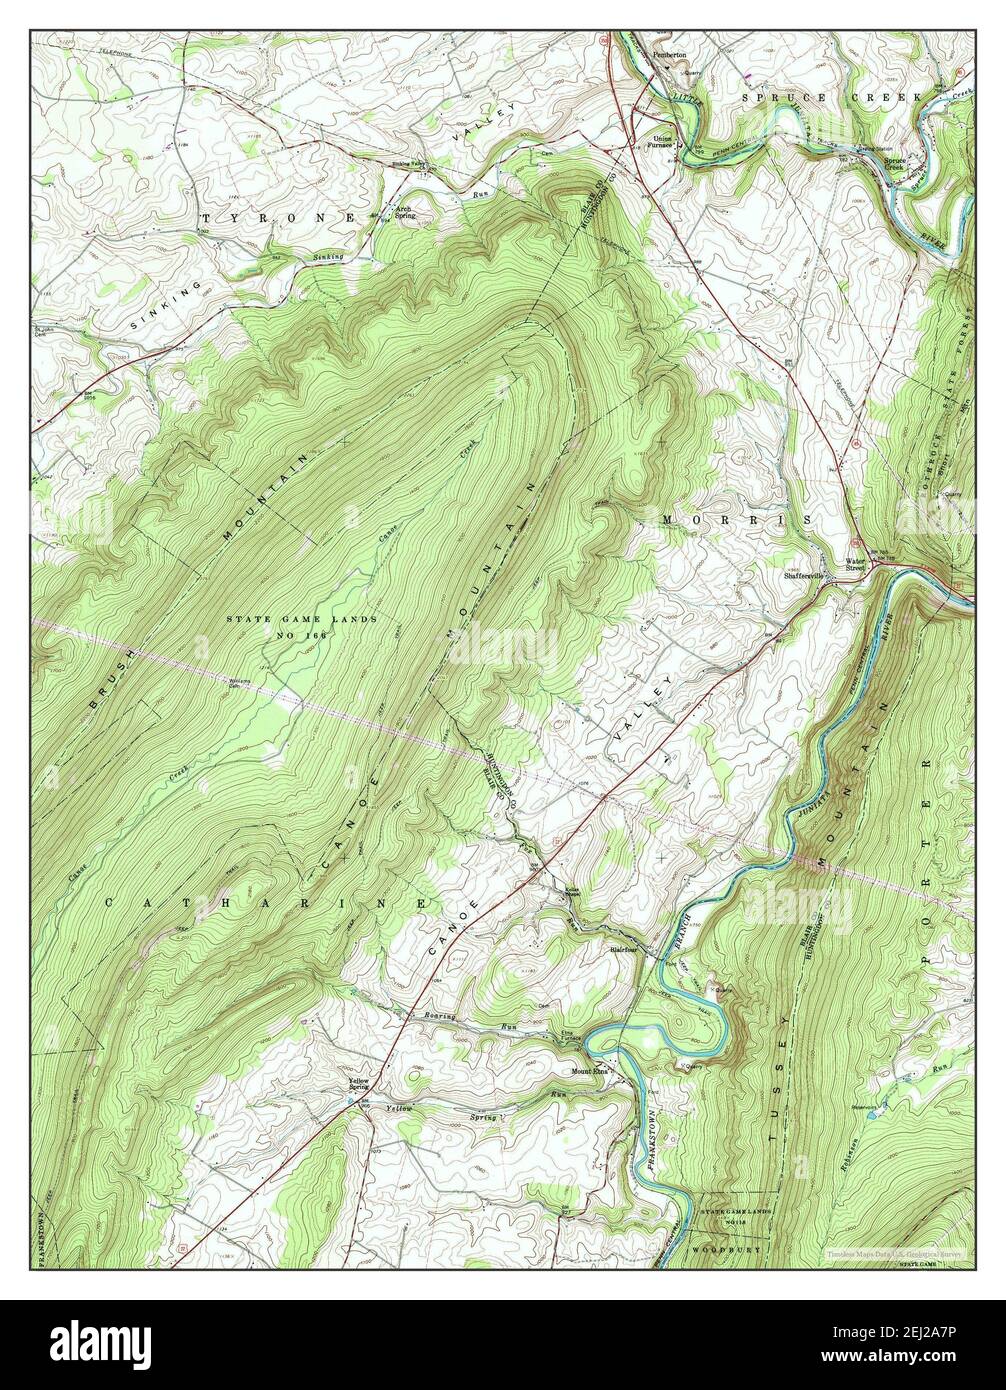 Spruce Creek, Pennsylvanie, carte 1963, 1:24000, États-Unis d'Amérique par Timeless Maps, données U.S. Geological Survey Banque D'Images